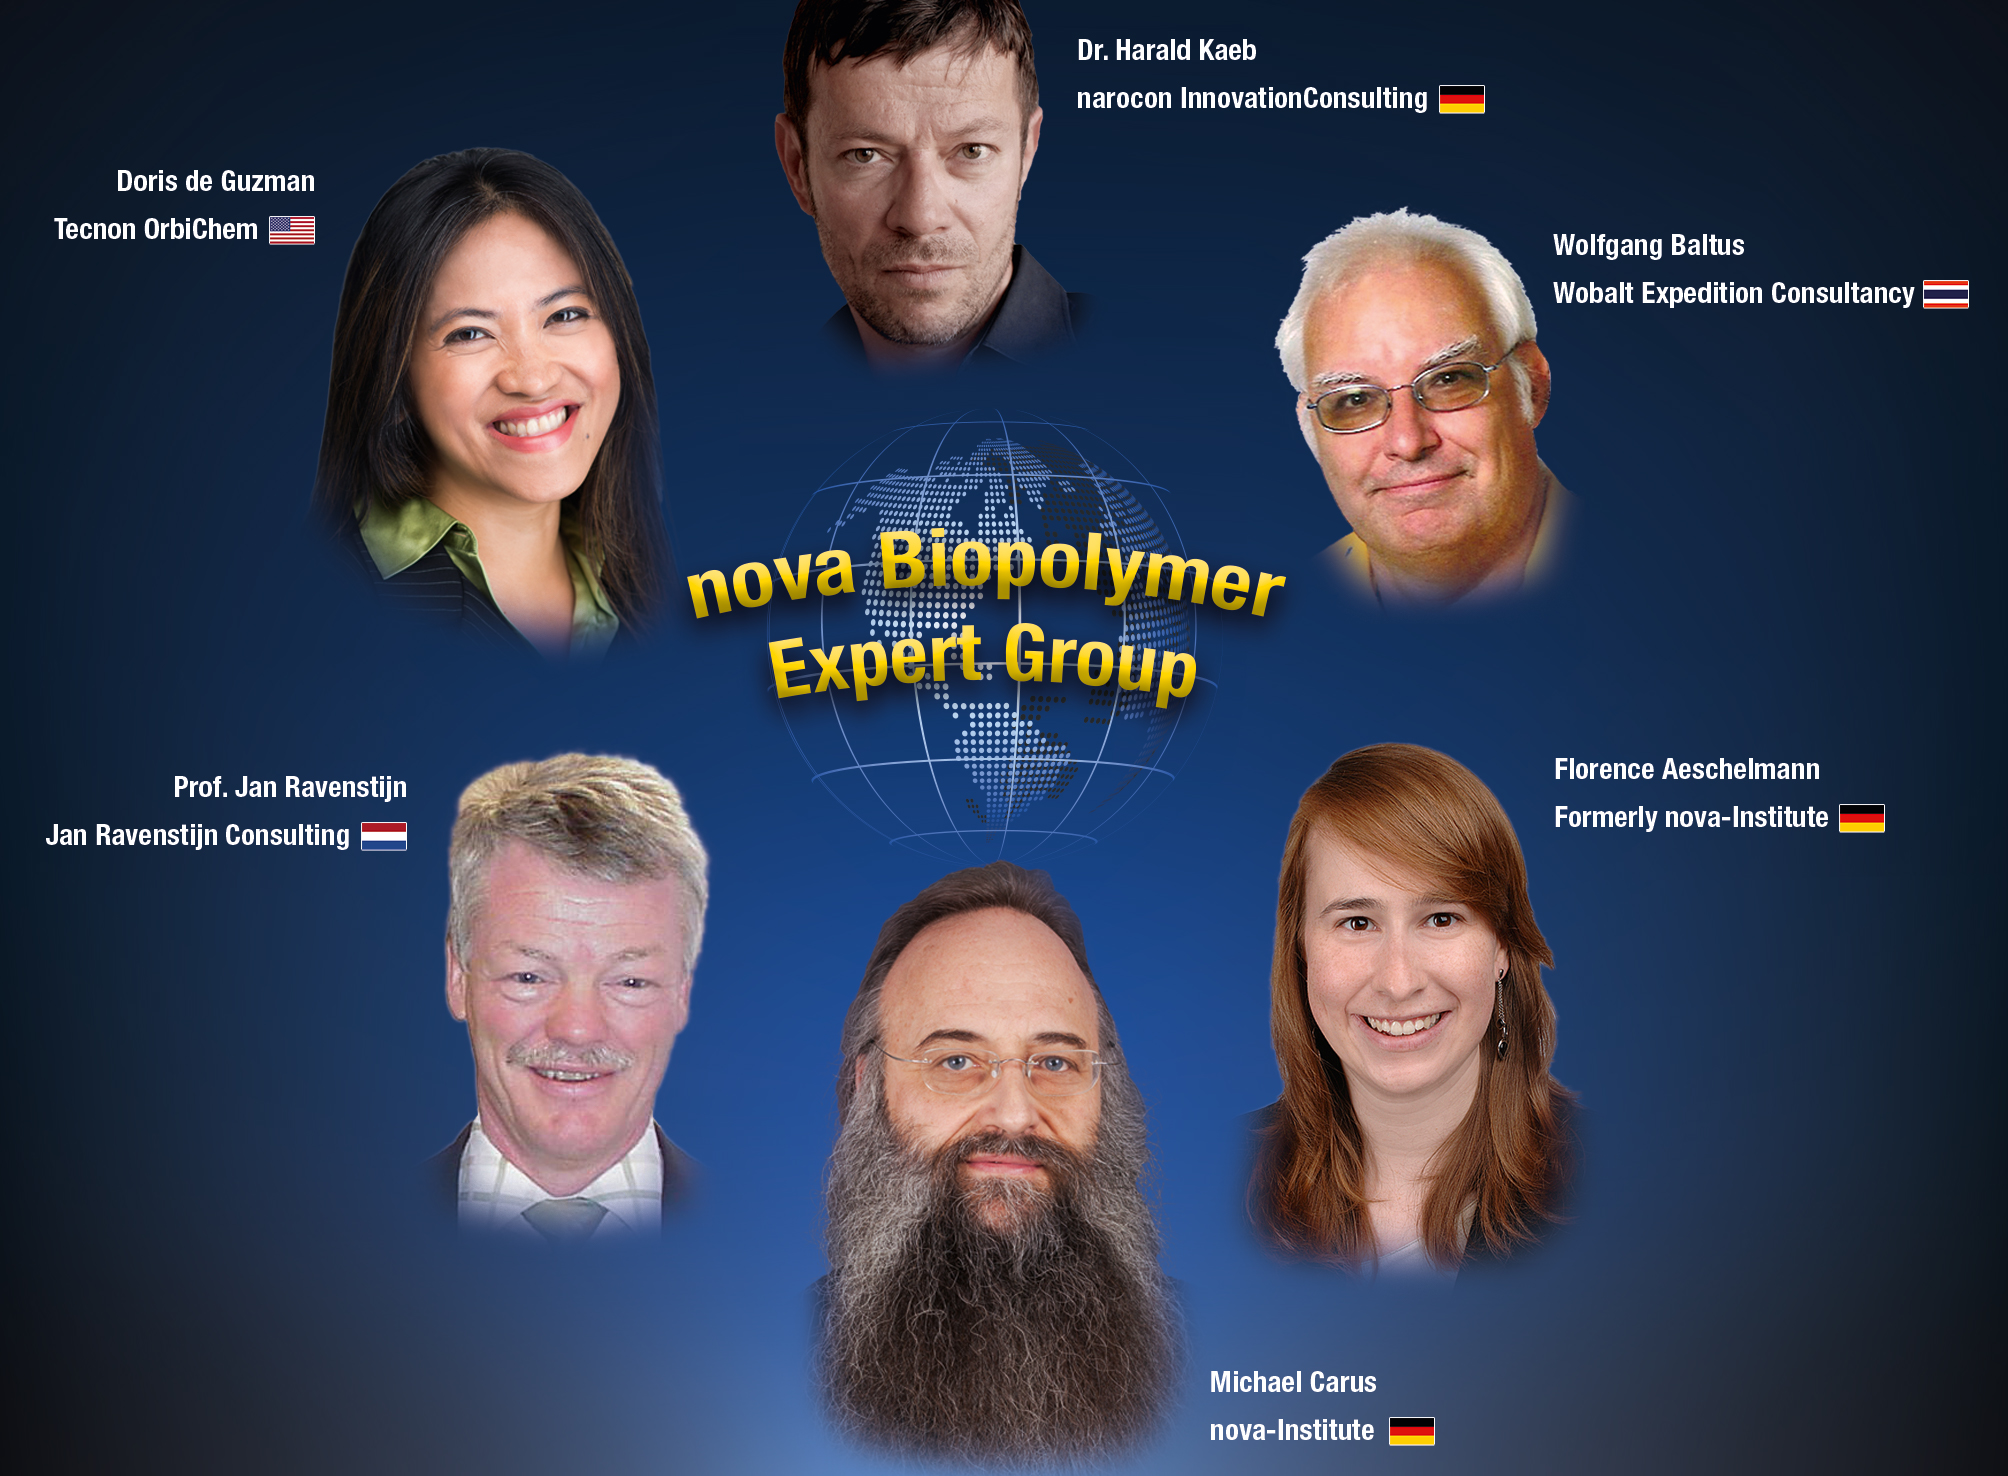 17-02-17-MS-Biopolymer-expert-group-nova.jpg